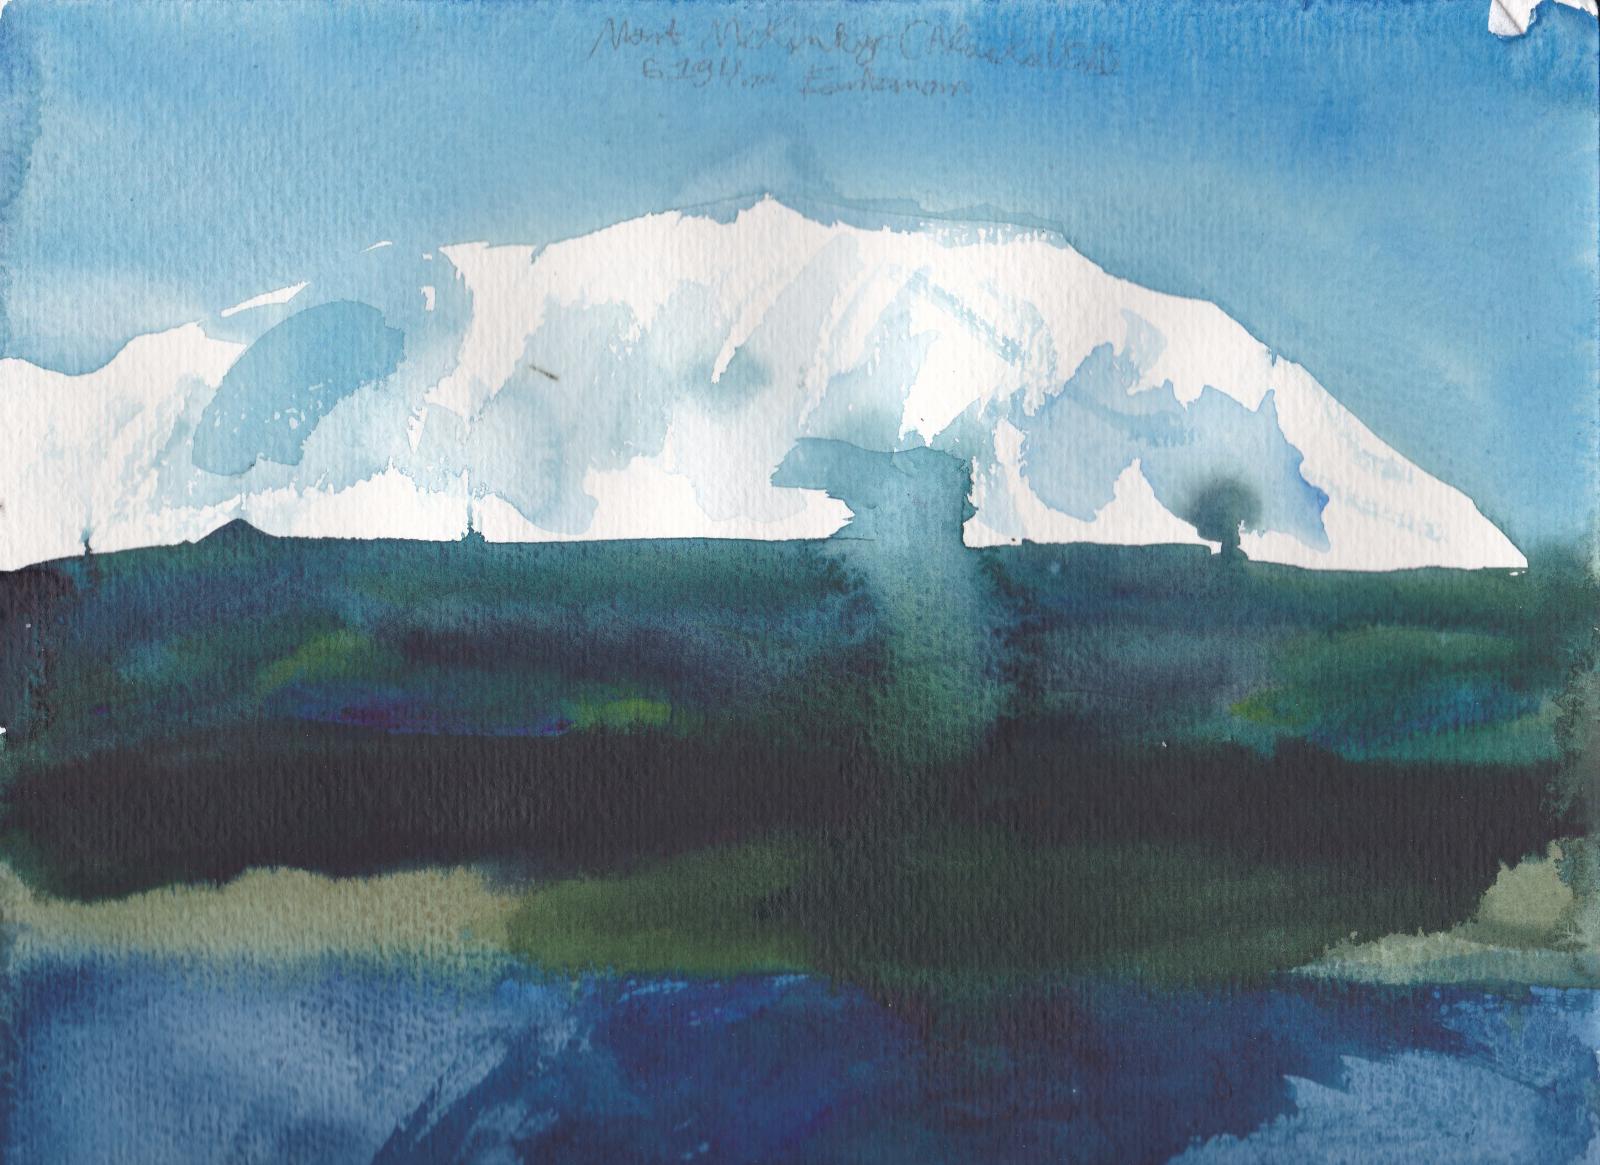 Le Mont McKinley, point culminant de l\'Amérique du Nord à 6194m d\'altitude, et ses gros glaciers puis forets et lacs d\'Alaska. ( Alaska )